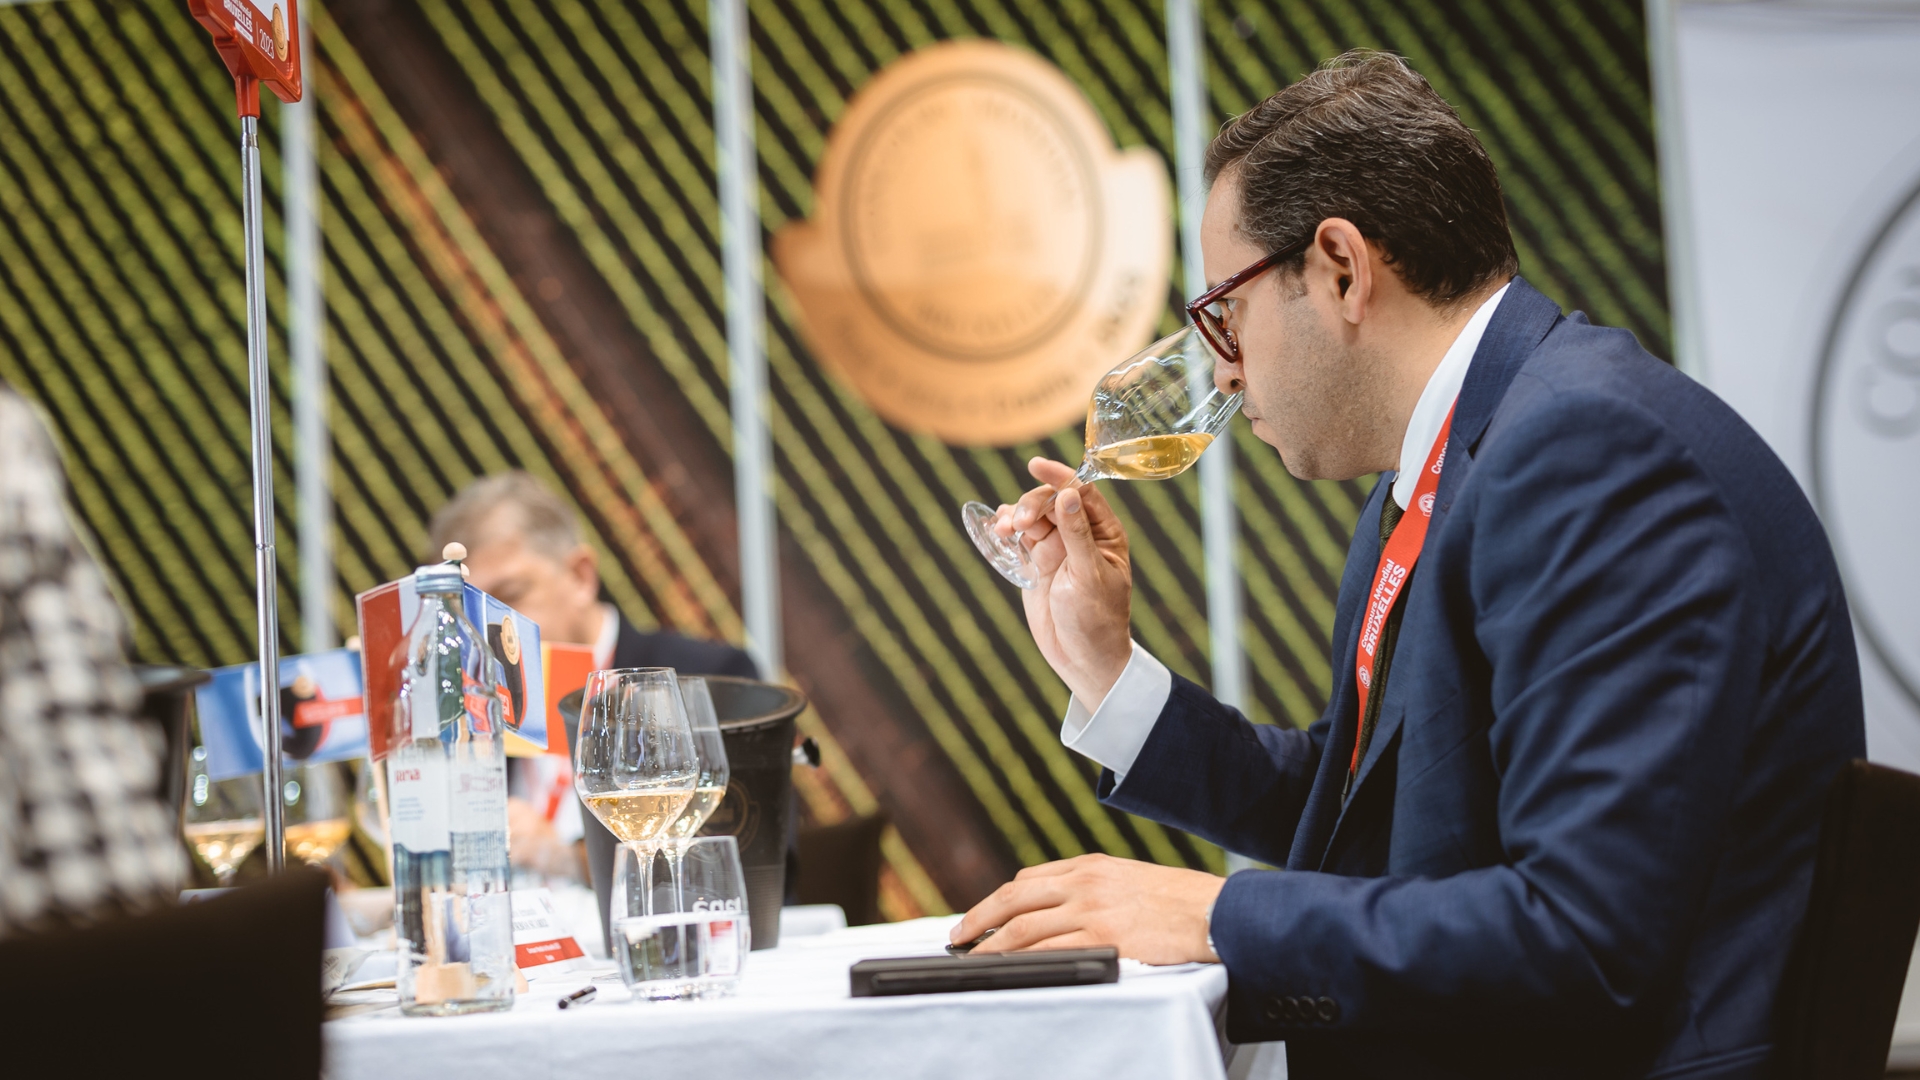 La session du CMB dédiée aux vins rouges et blancs réunit chaque année quelque 350 dégustateurs professionnels du monde entier. Photo: CMB